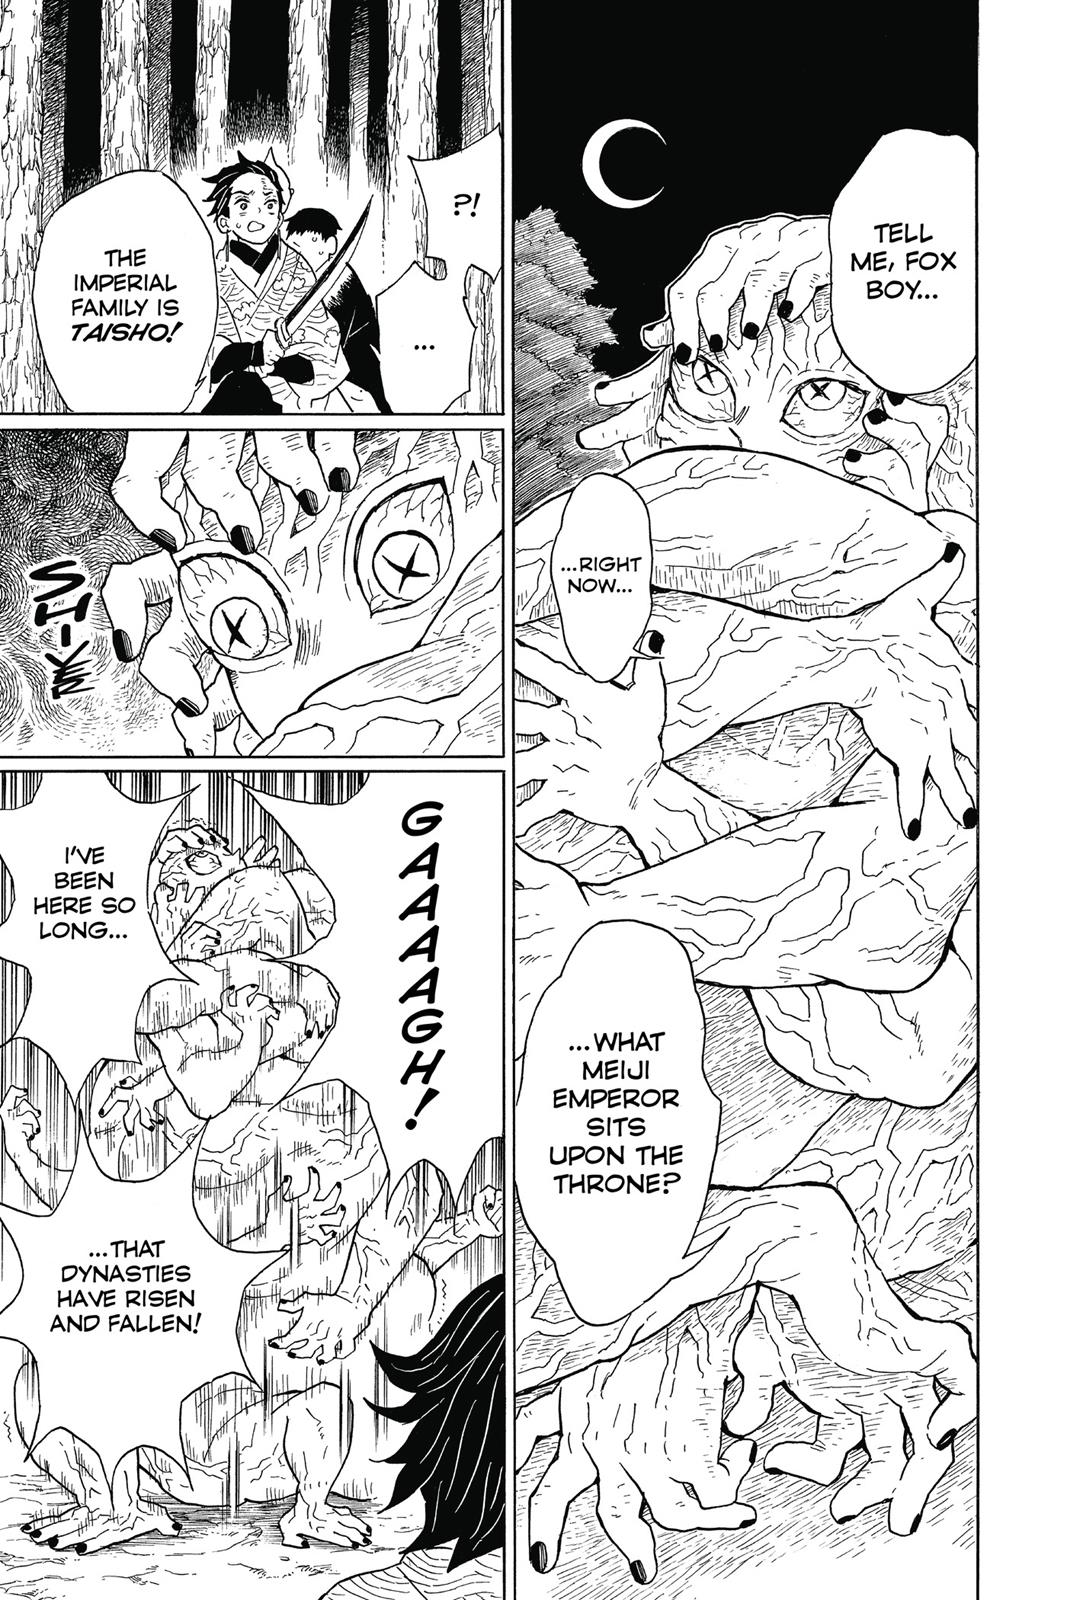 Demon Slayer Manga Manga Chapter - 7 - image 3